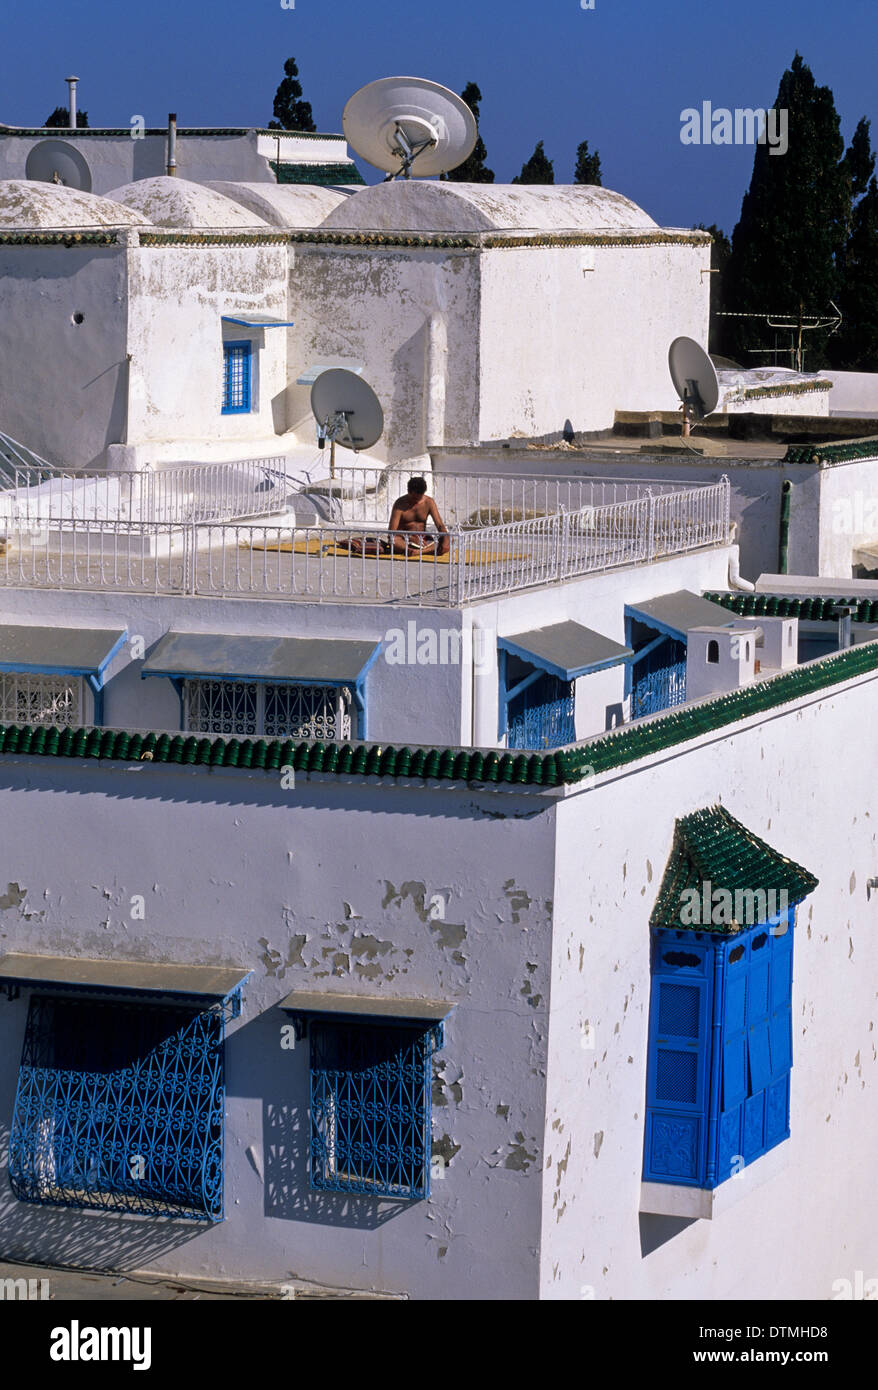 La Tunisia, Sidi Bou Said. Solarium di balneazione, lettura. Chiusi "Harem' nella finestra in basso a destra. Foto Stock